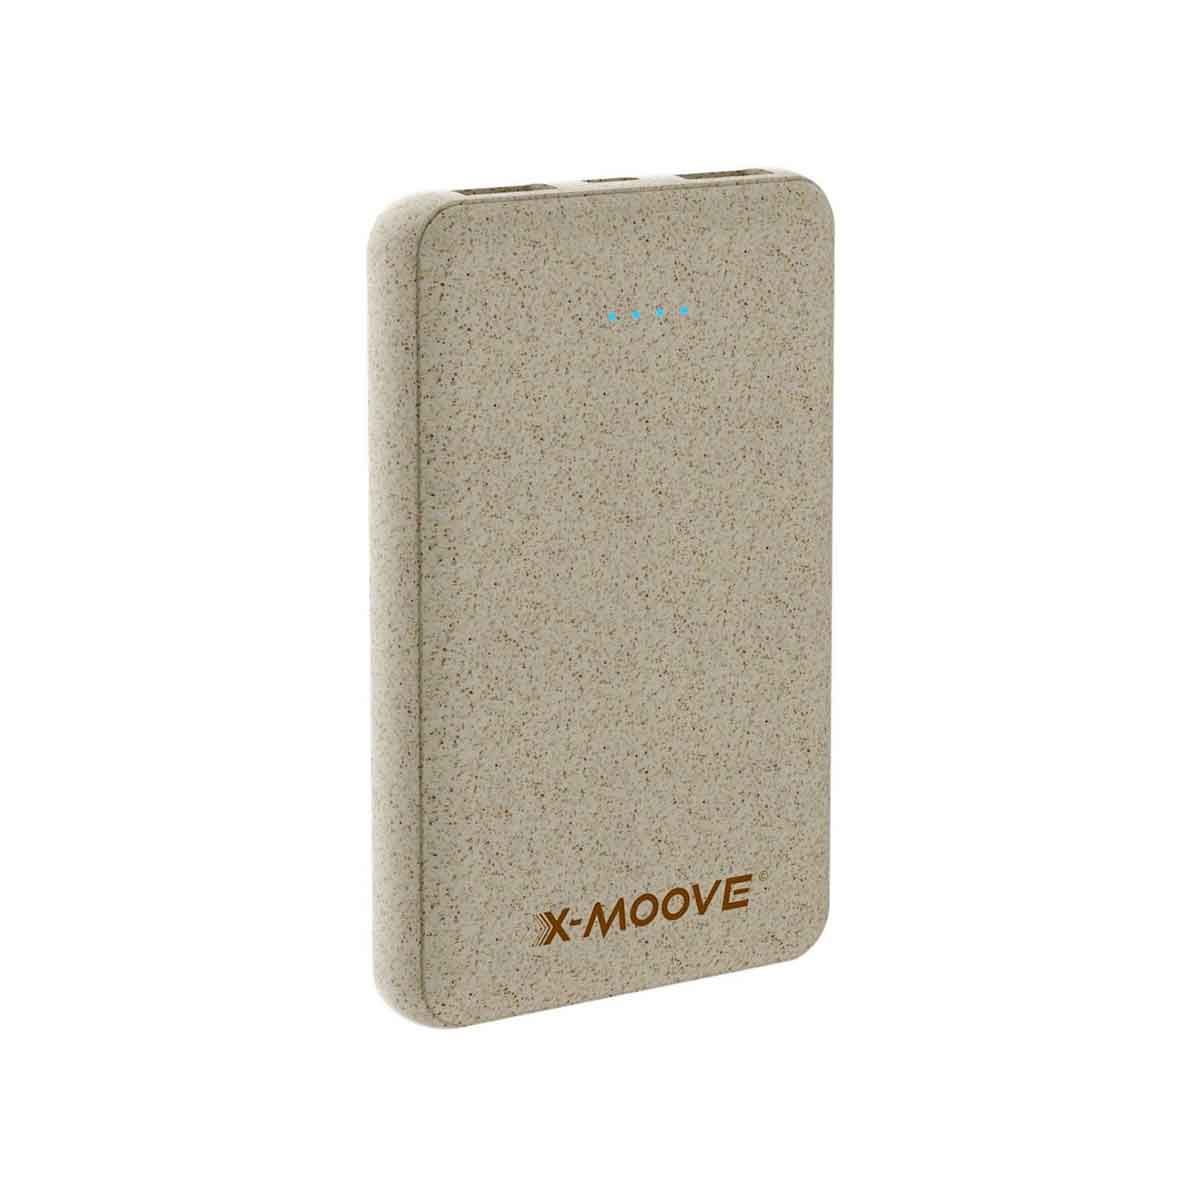 Batería externa X-Moove Sky 5000 mAh - 2 puertos USB